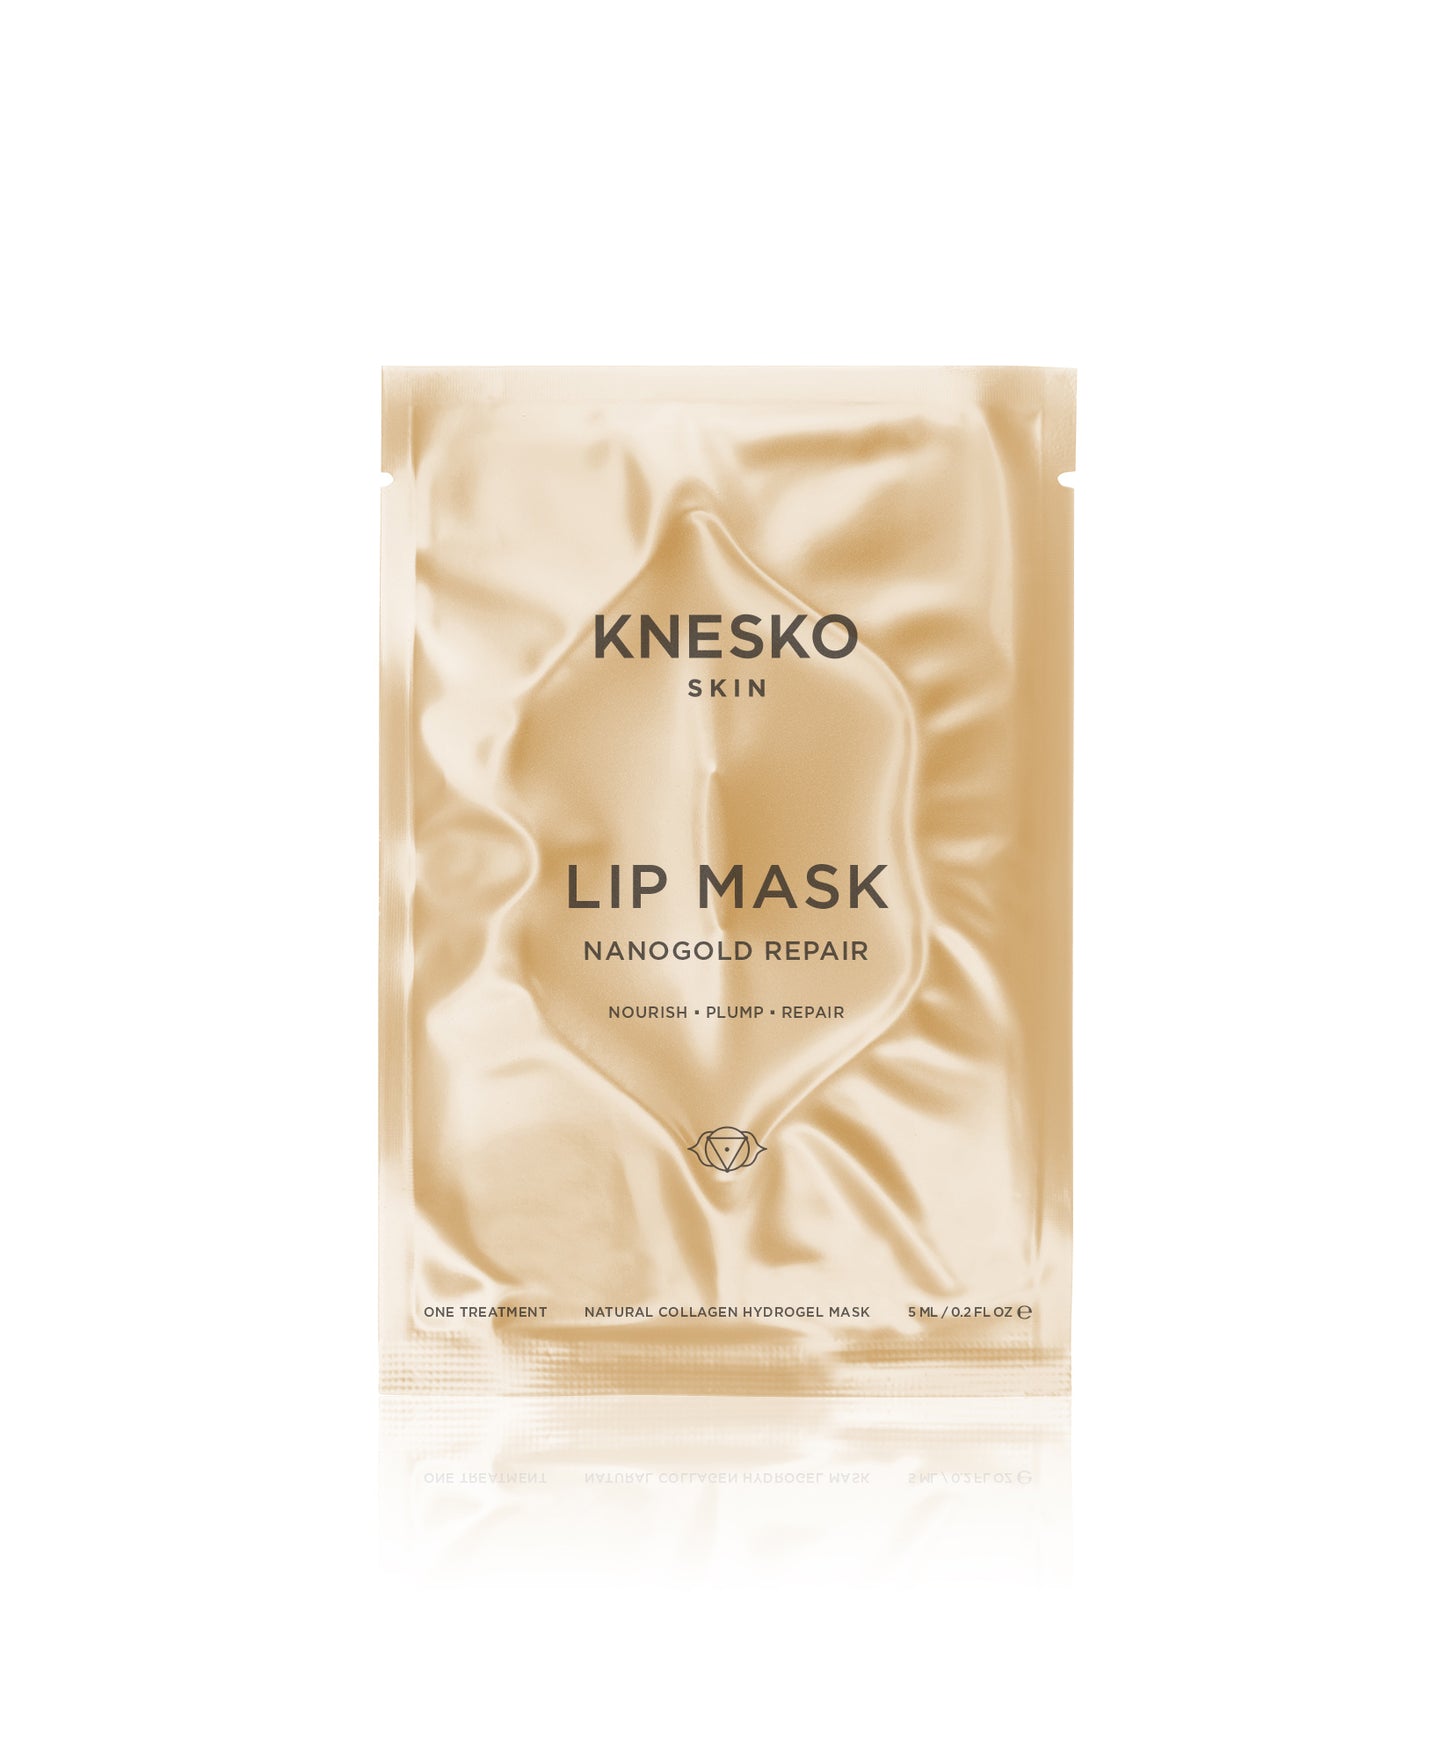 Nano Gold Repair Lip Mask packaging.